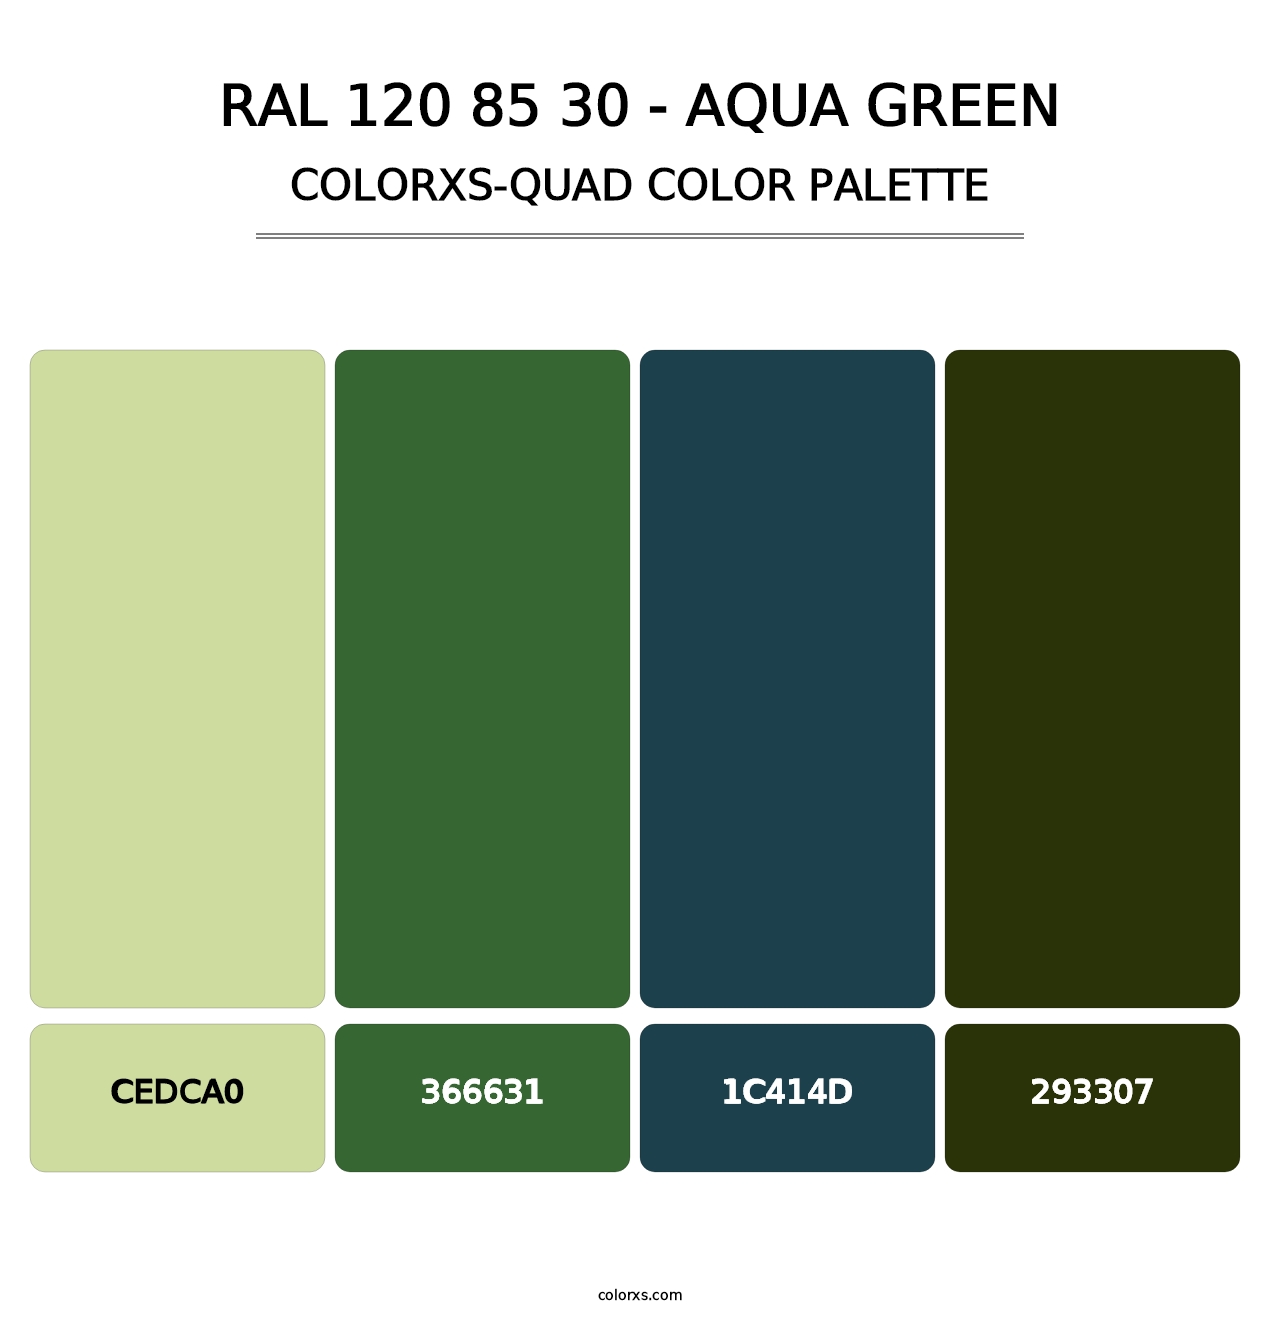 RAL 120 85 30 - Aqua Green - Colorxs Quad Palette